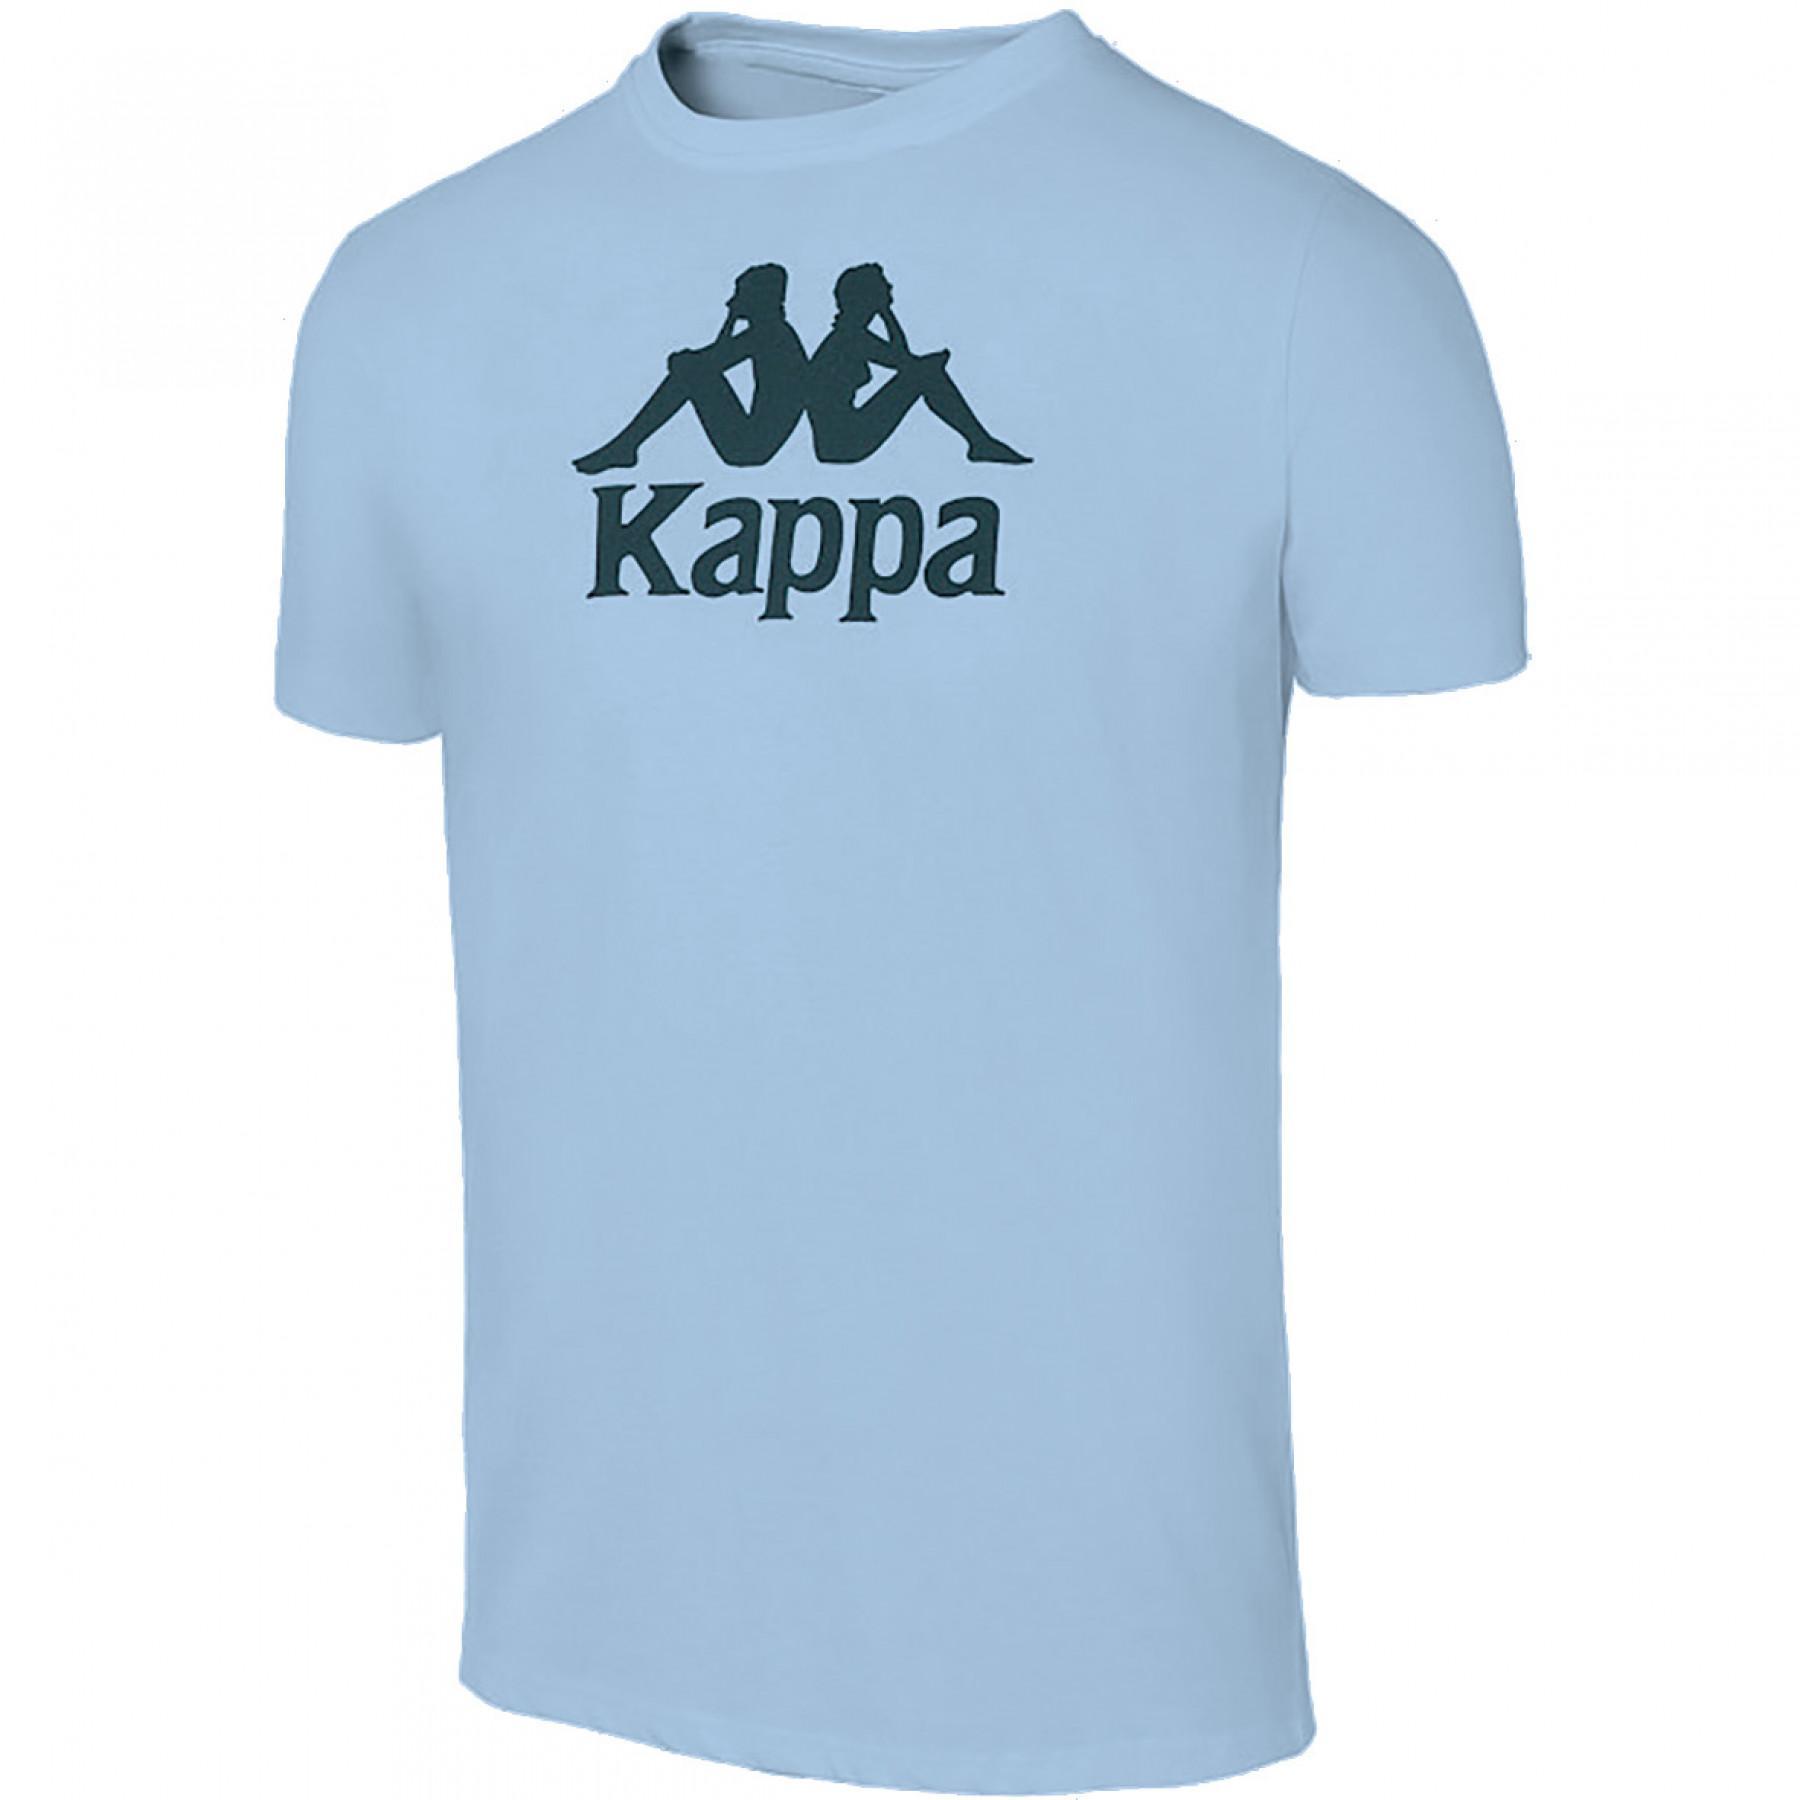 Juego de 5 camisetas para niños Kappa Mira